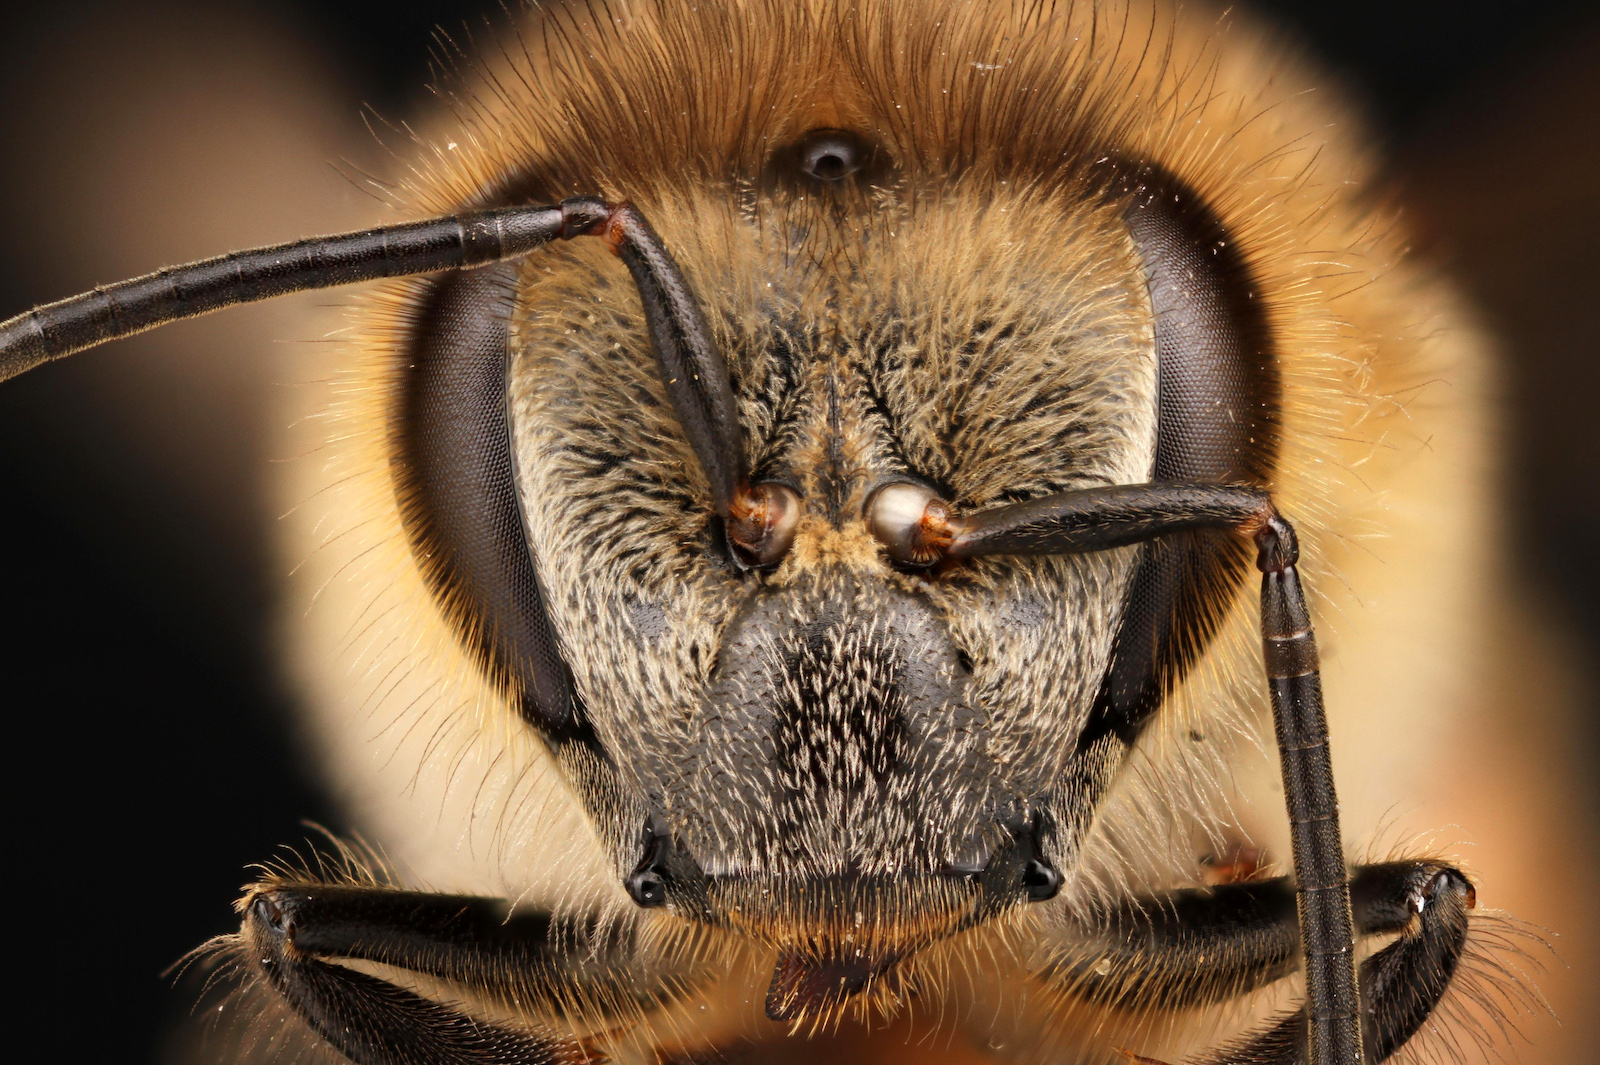 a close up of a honeybee